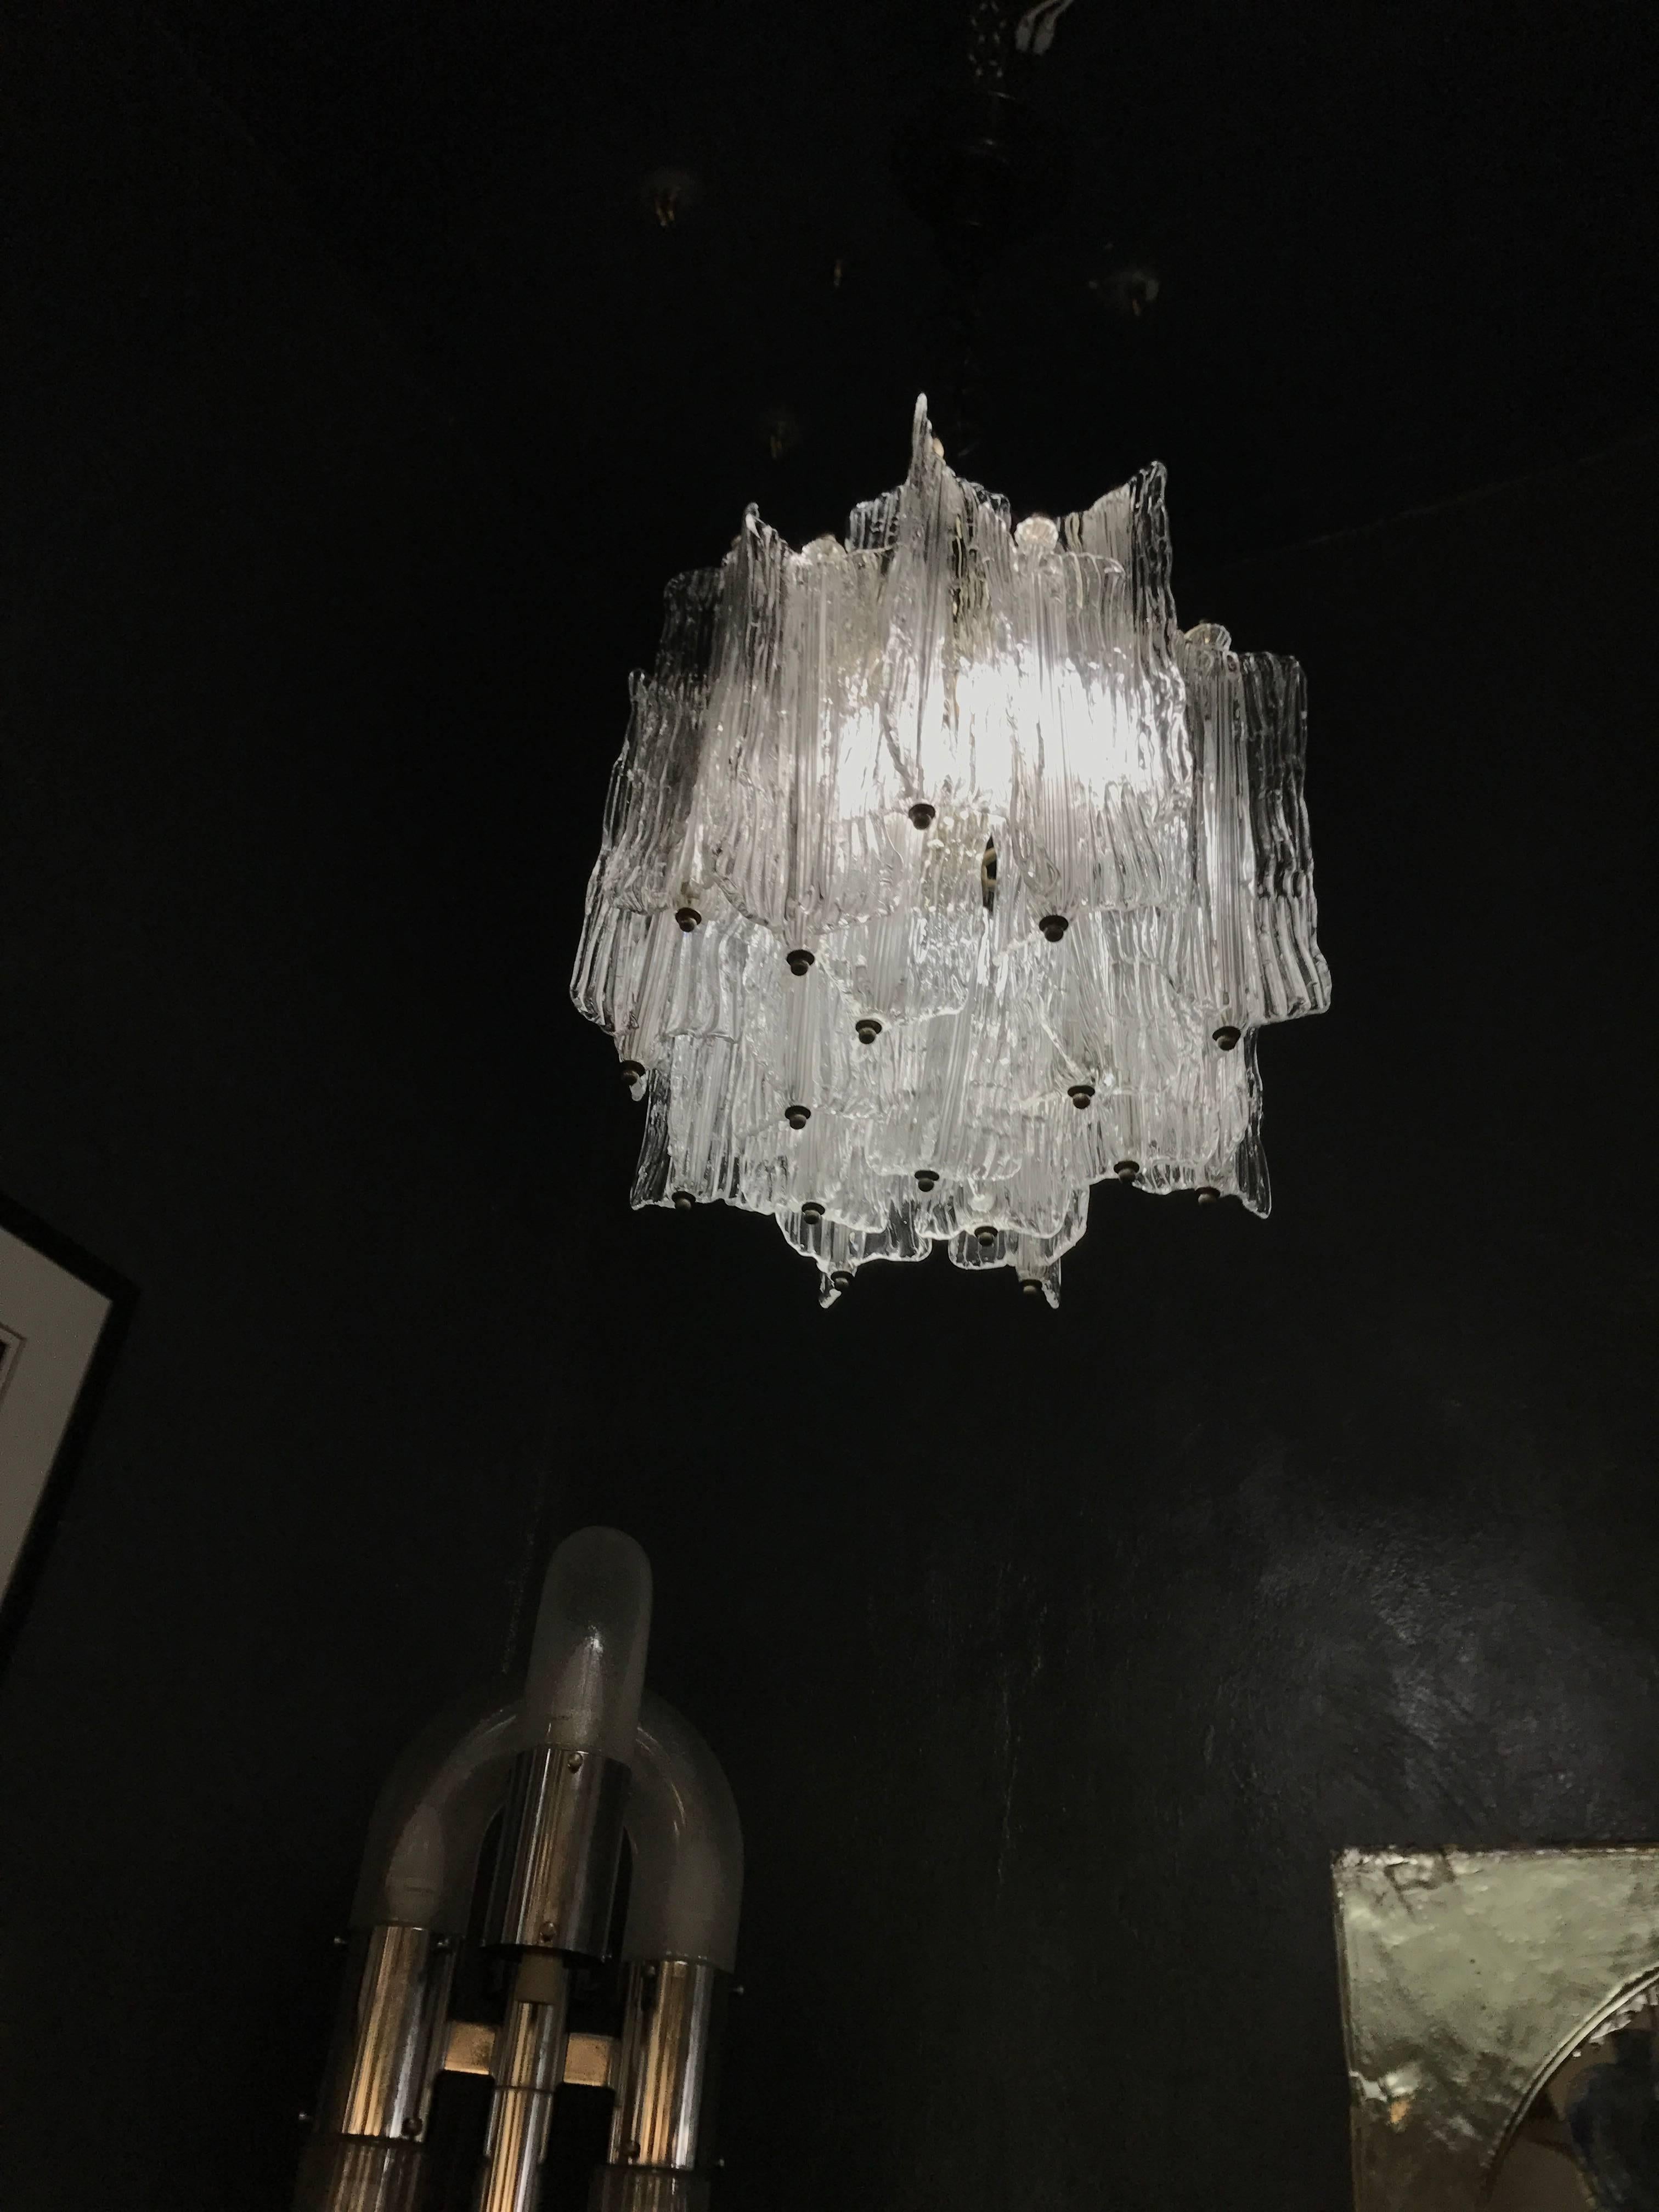 Mid-Century Modern chandelier designed by Toni Zuccheri for Venini in Murano glass, circa 1950-1960.